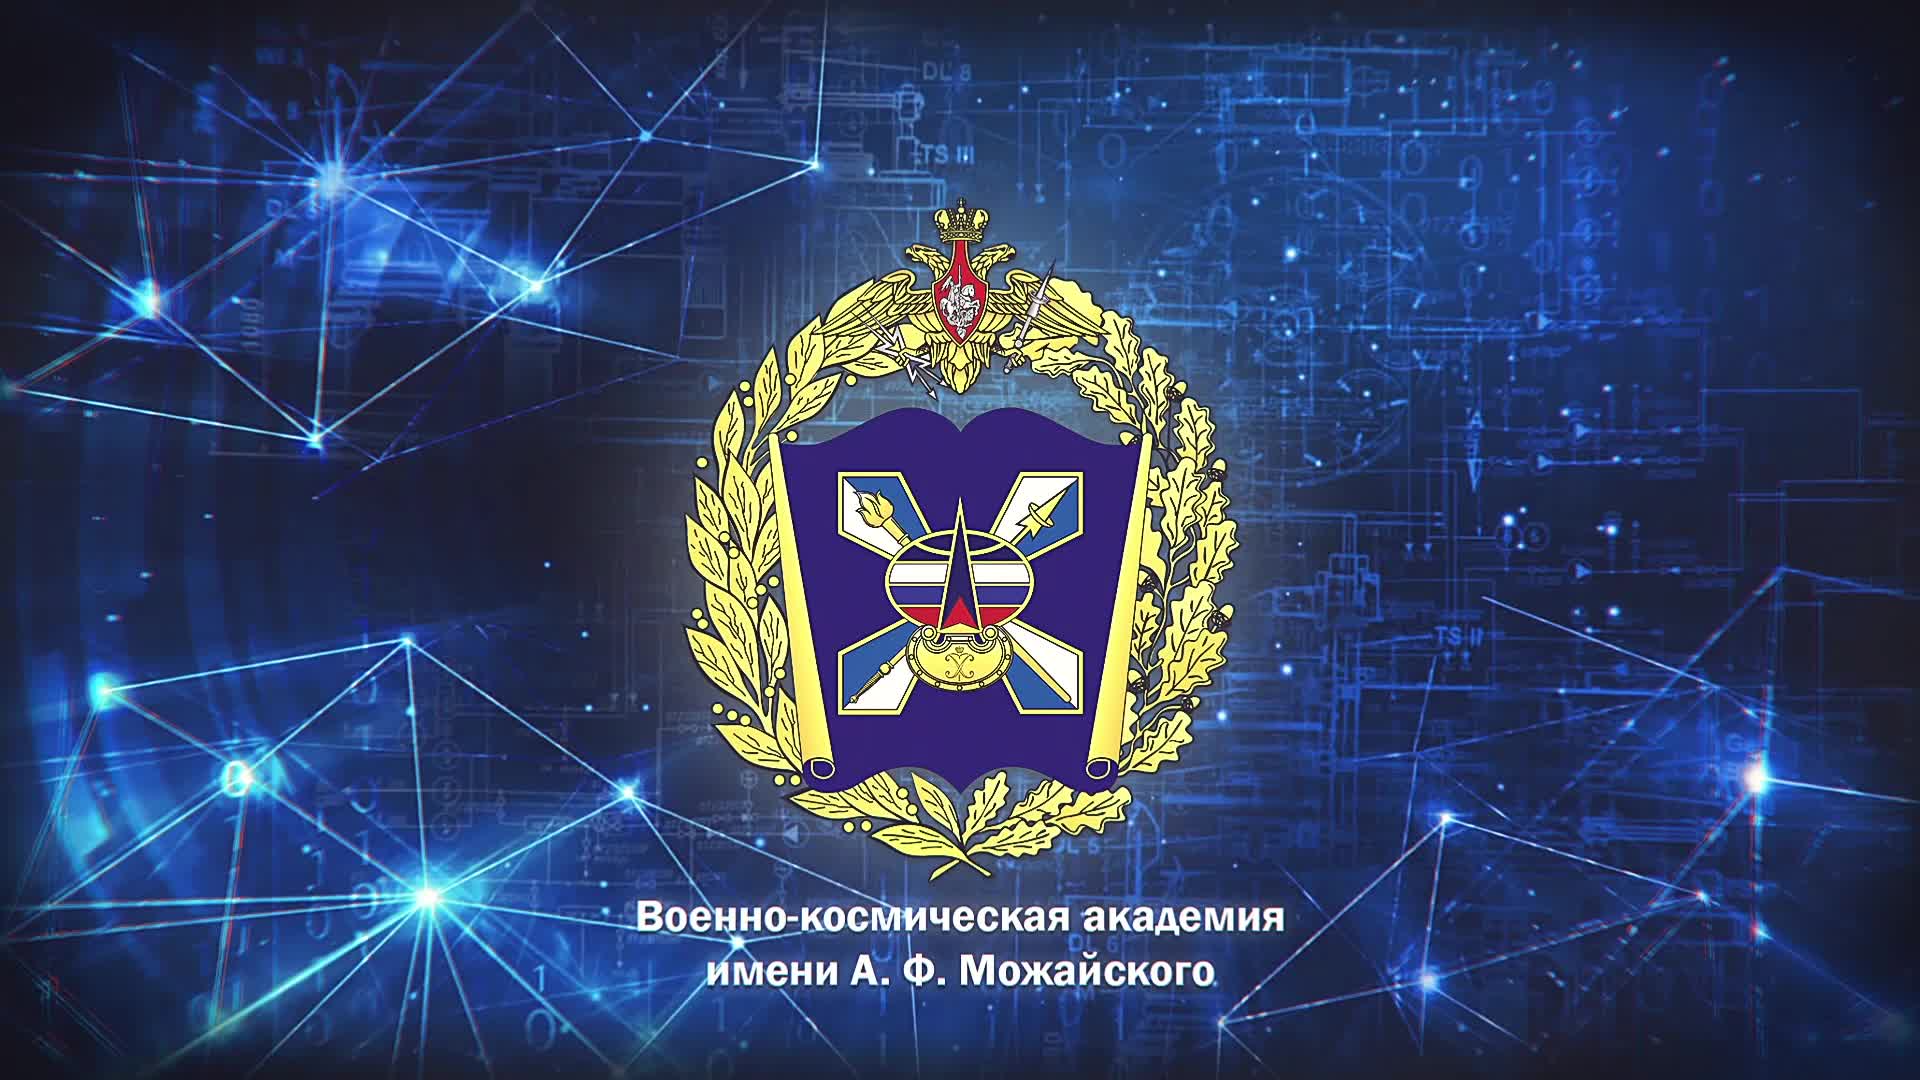 Приглашаем обучающихся принять участие в олимпиаде Военно-космической академии имени А.Ф. Можайского.